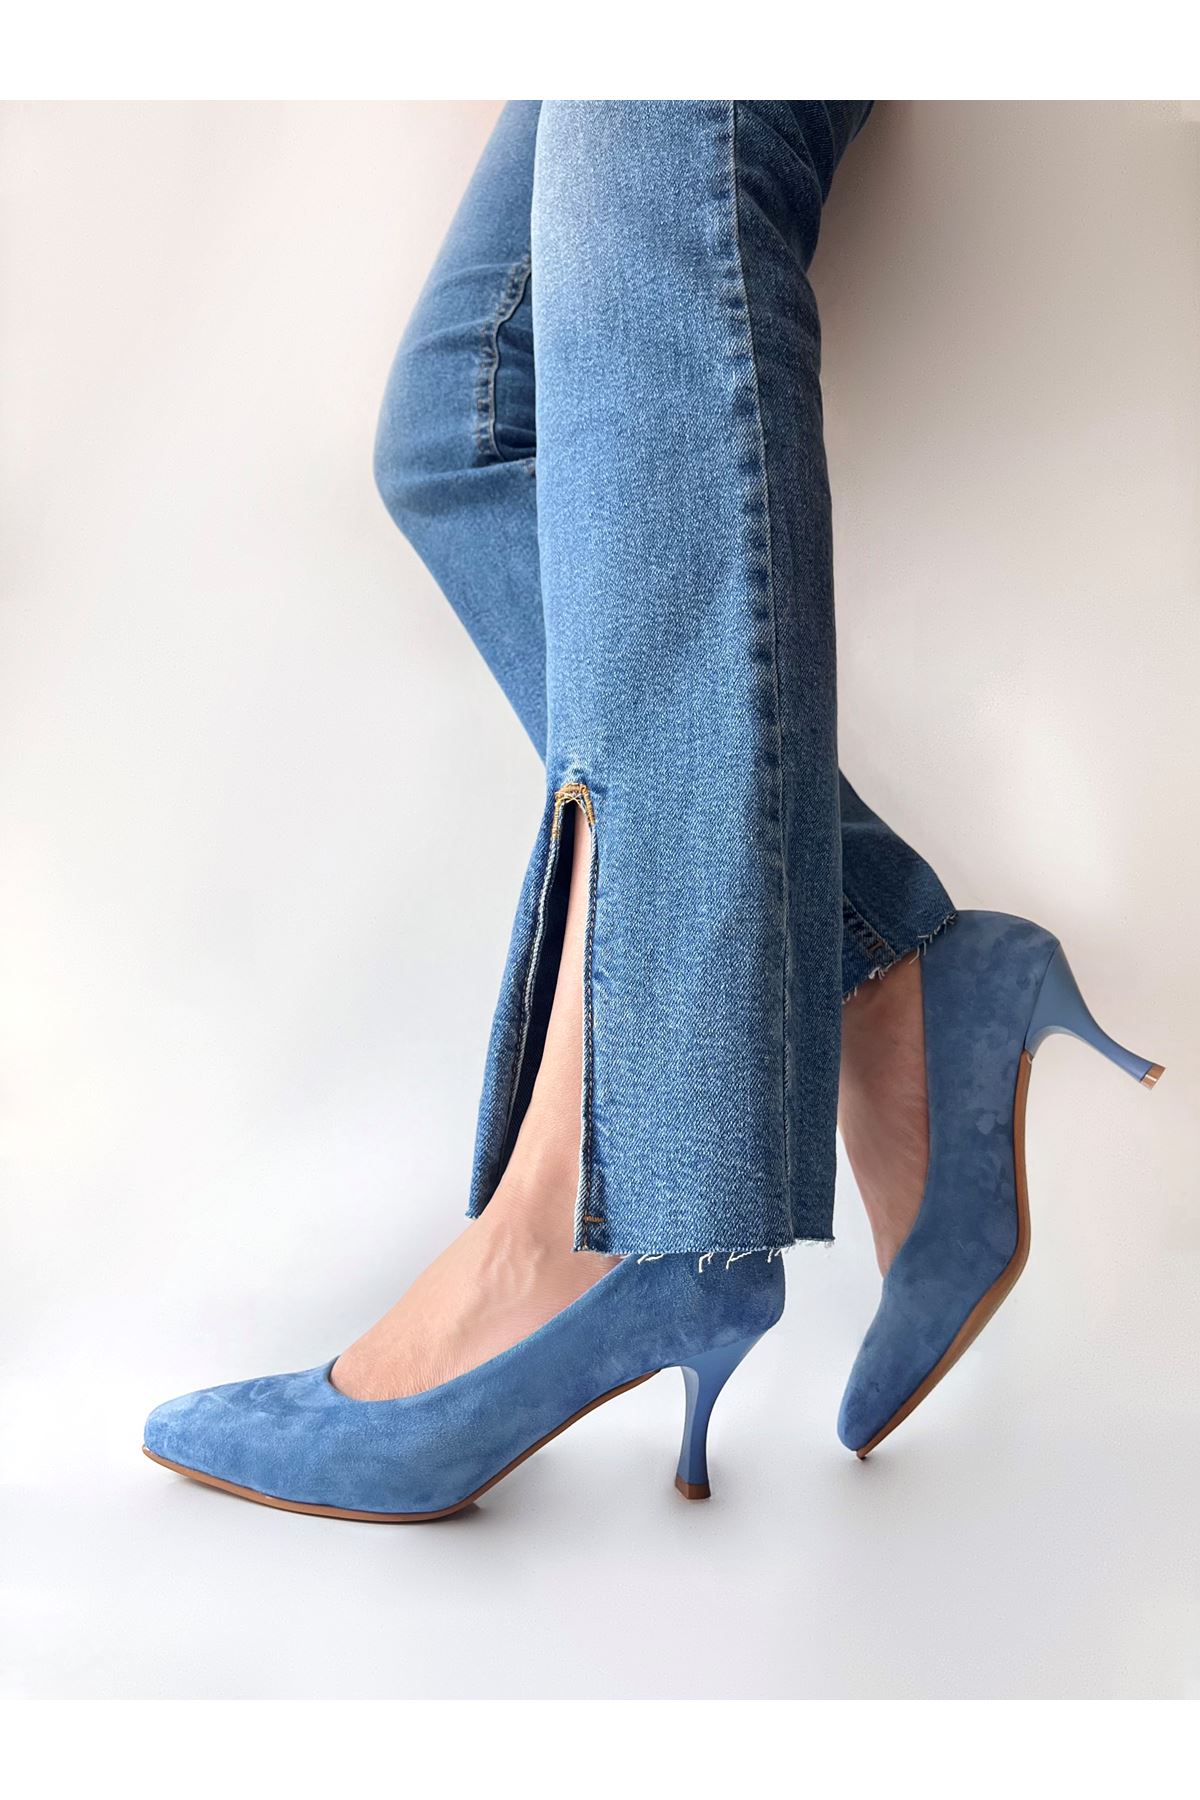 Gerçek Süet Kadın Topuklu Ayakkabı  Mavi  Cool  